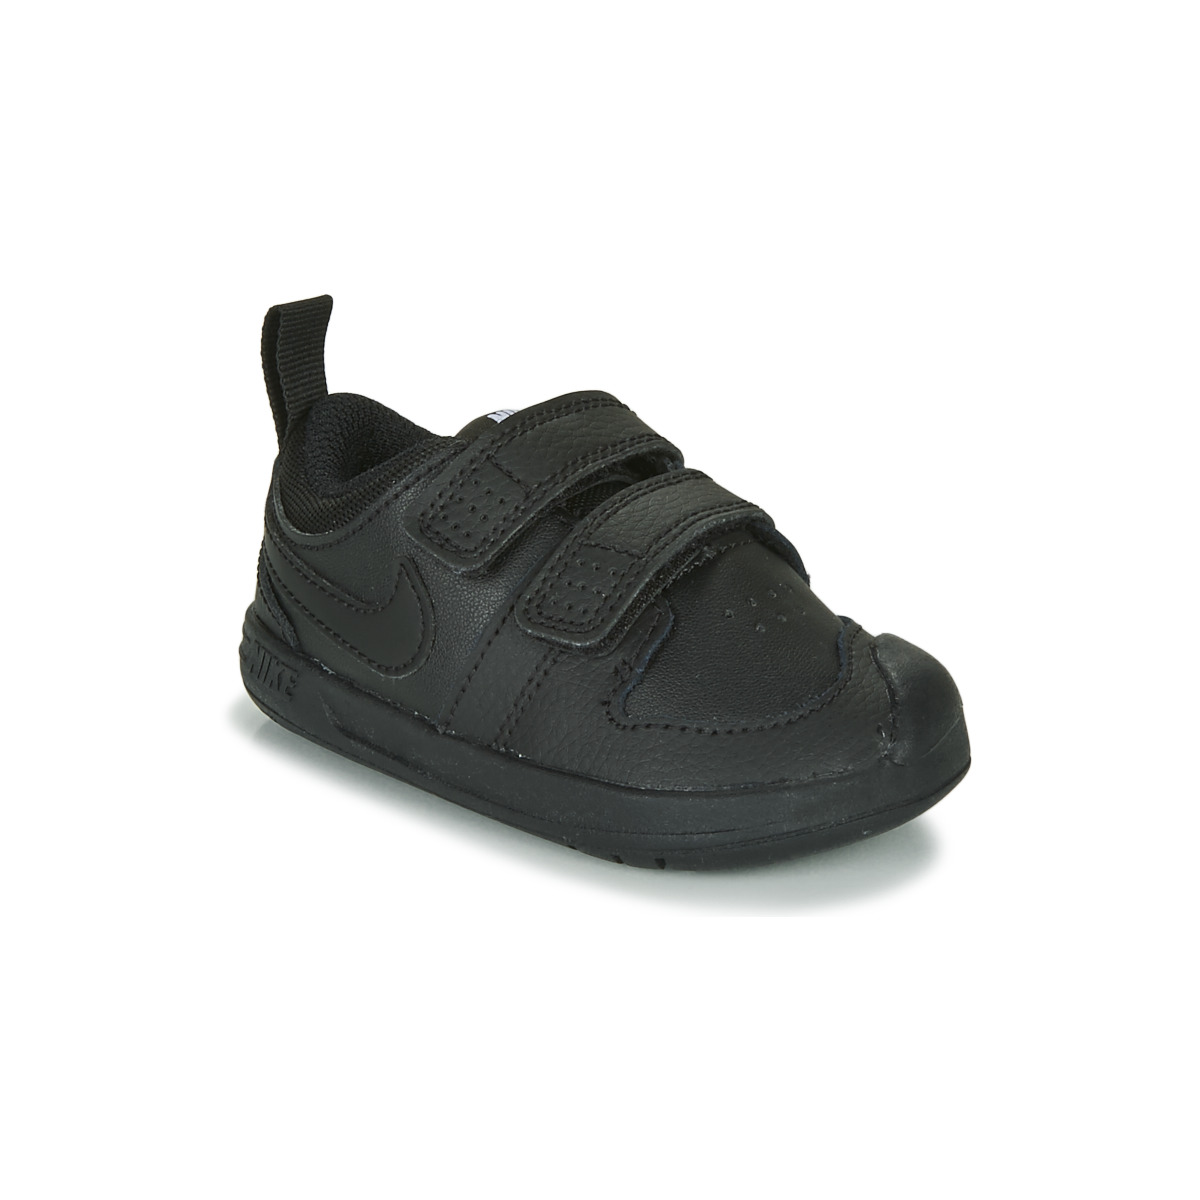 Παπούτσια Παιδί Χαμηλά Sneakers Nike PICO 5 TD Black